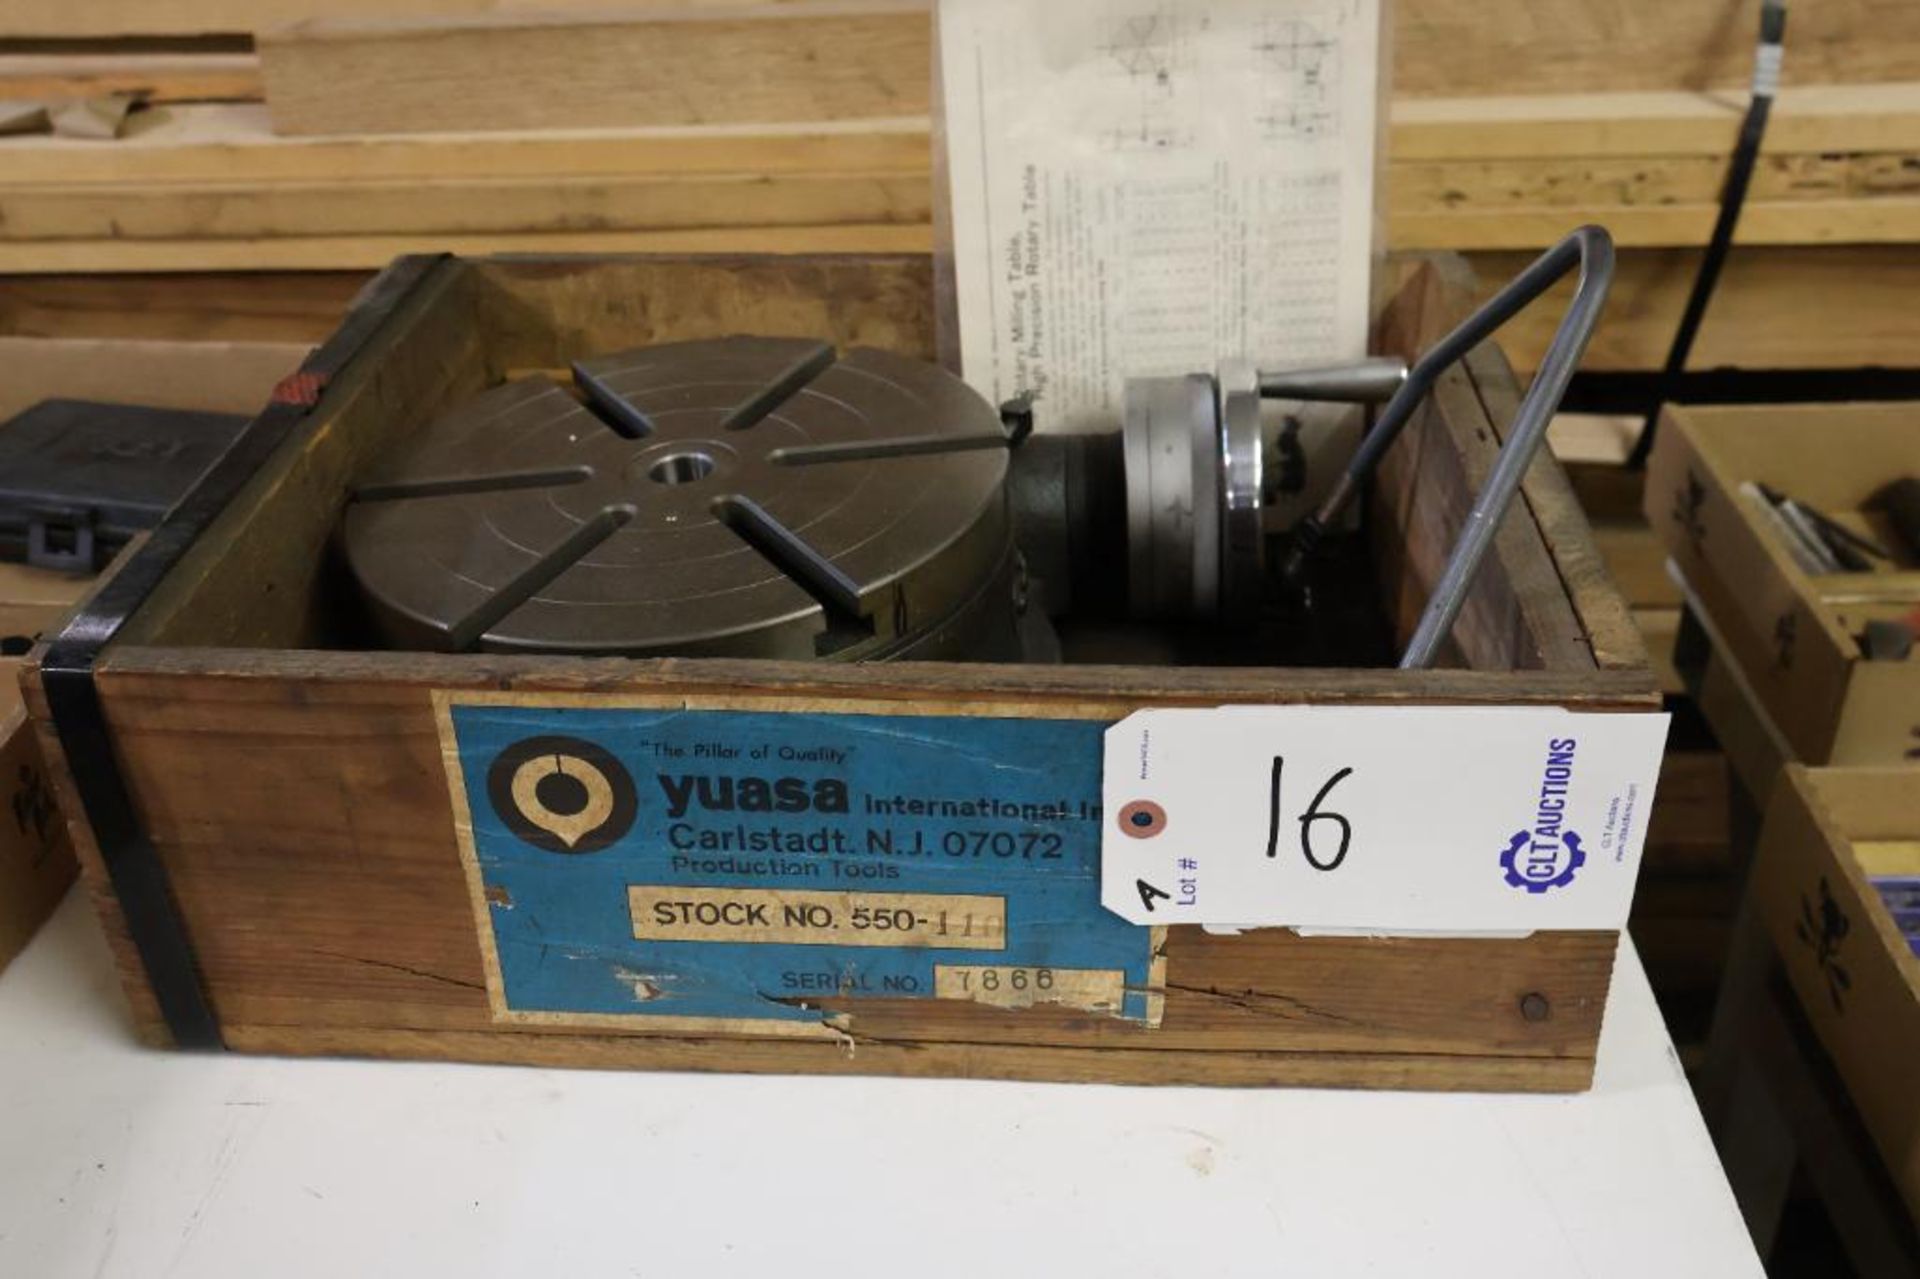 Yuasa 550-110 10" rotary table